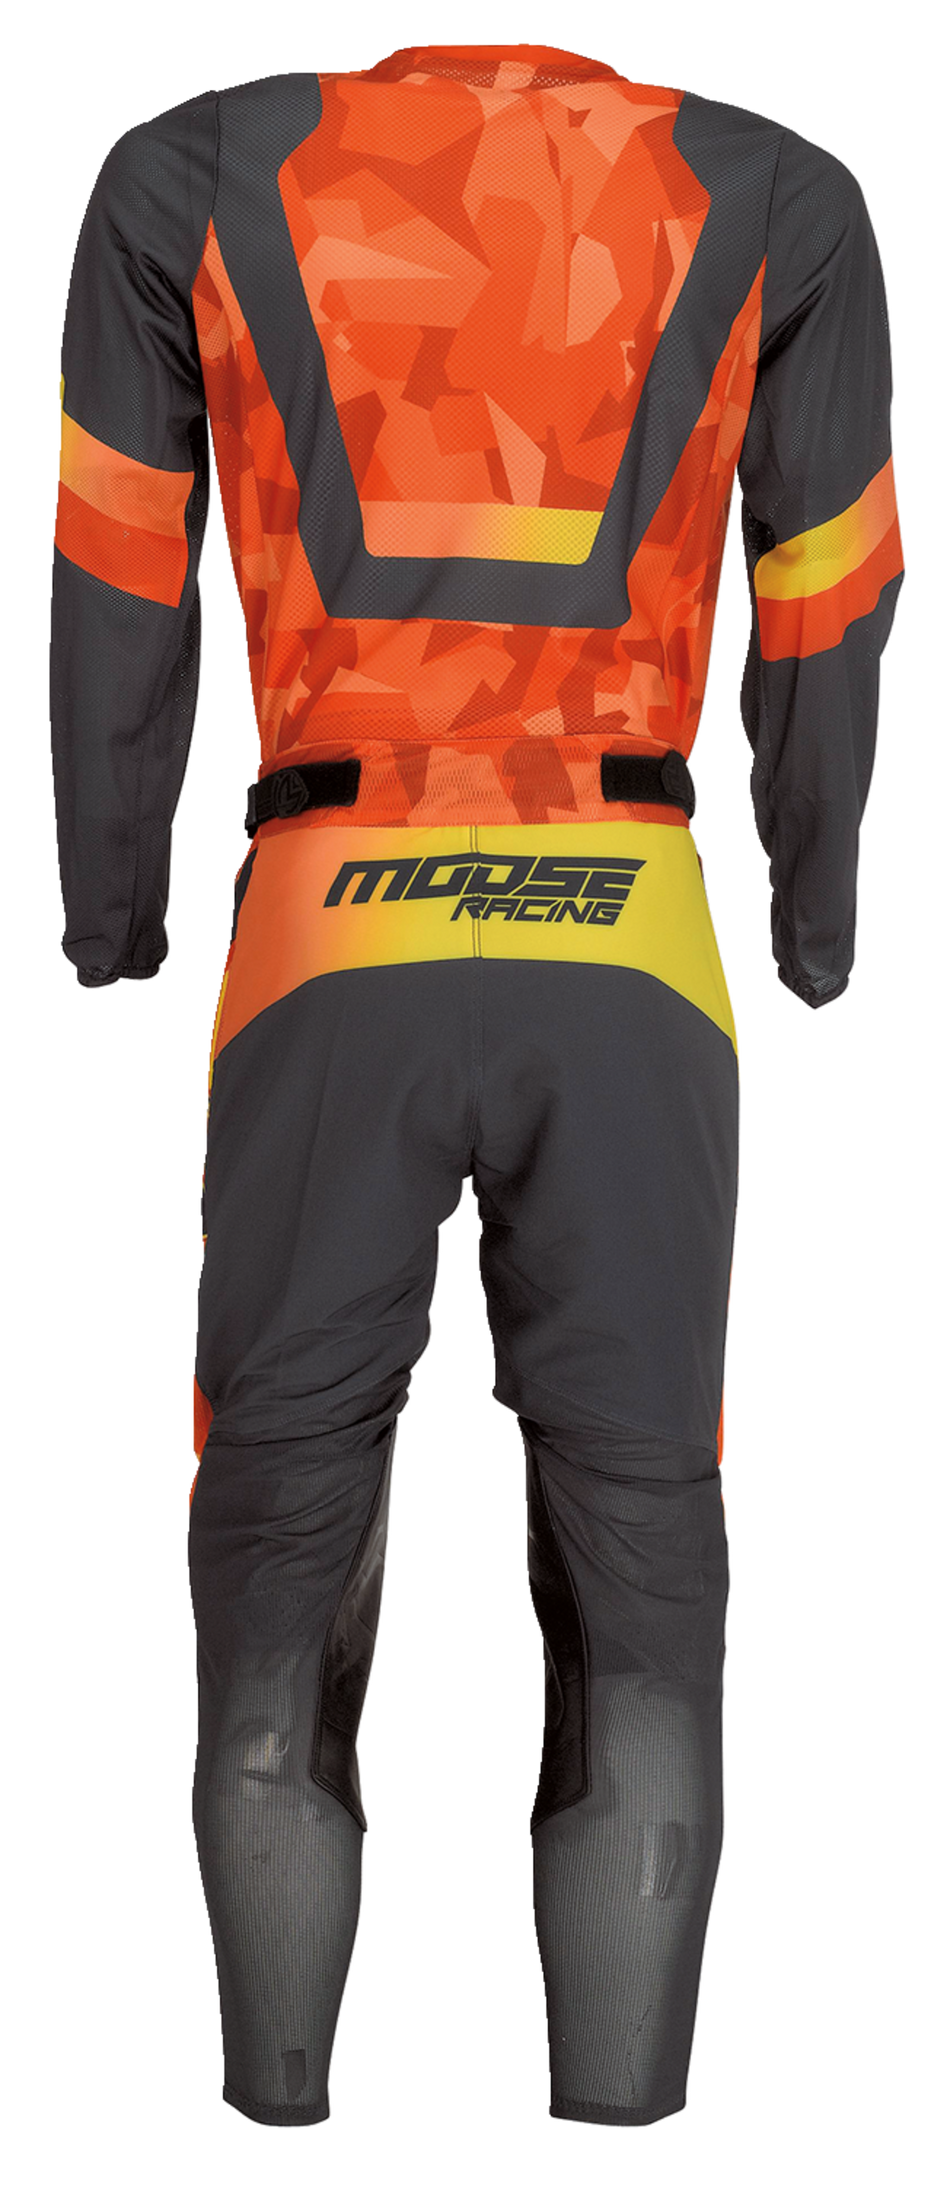 Camiseta MOOSE RACING Sahara™ - Naranja/Negro - 2XL 2910-7226 